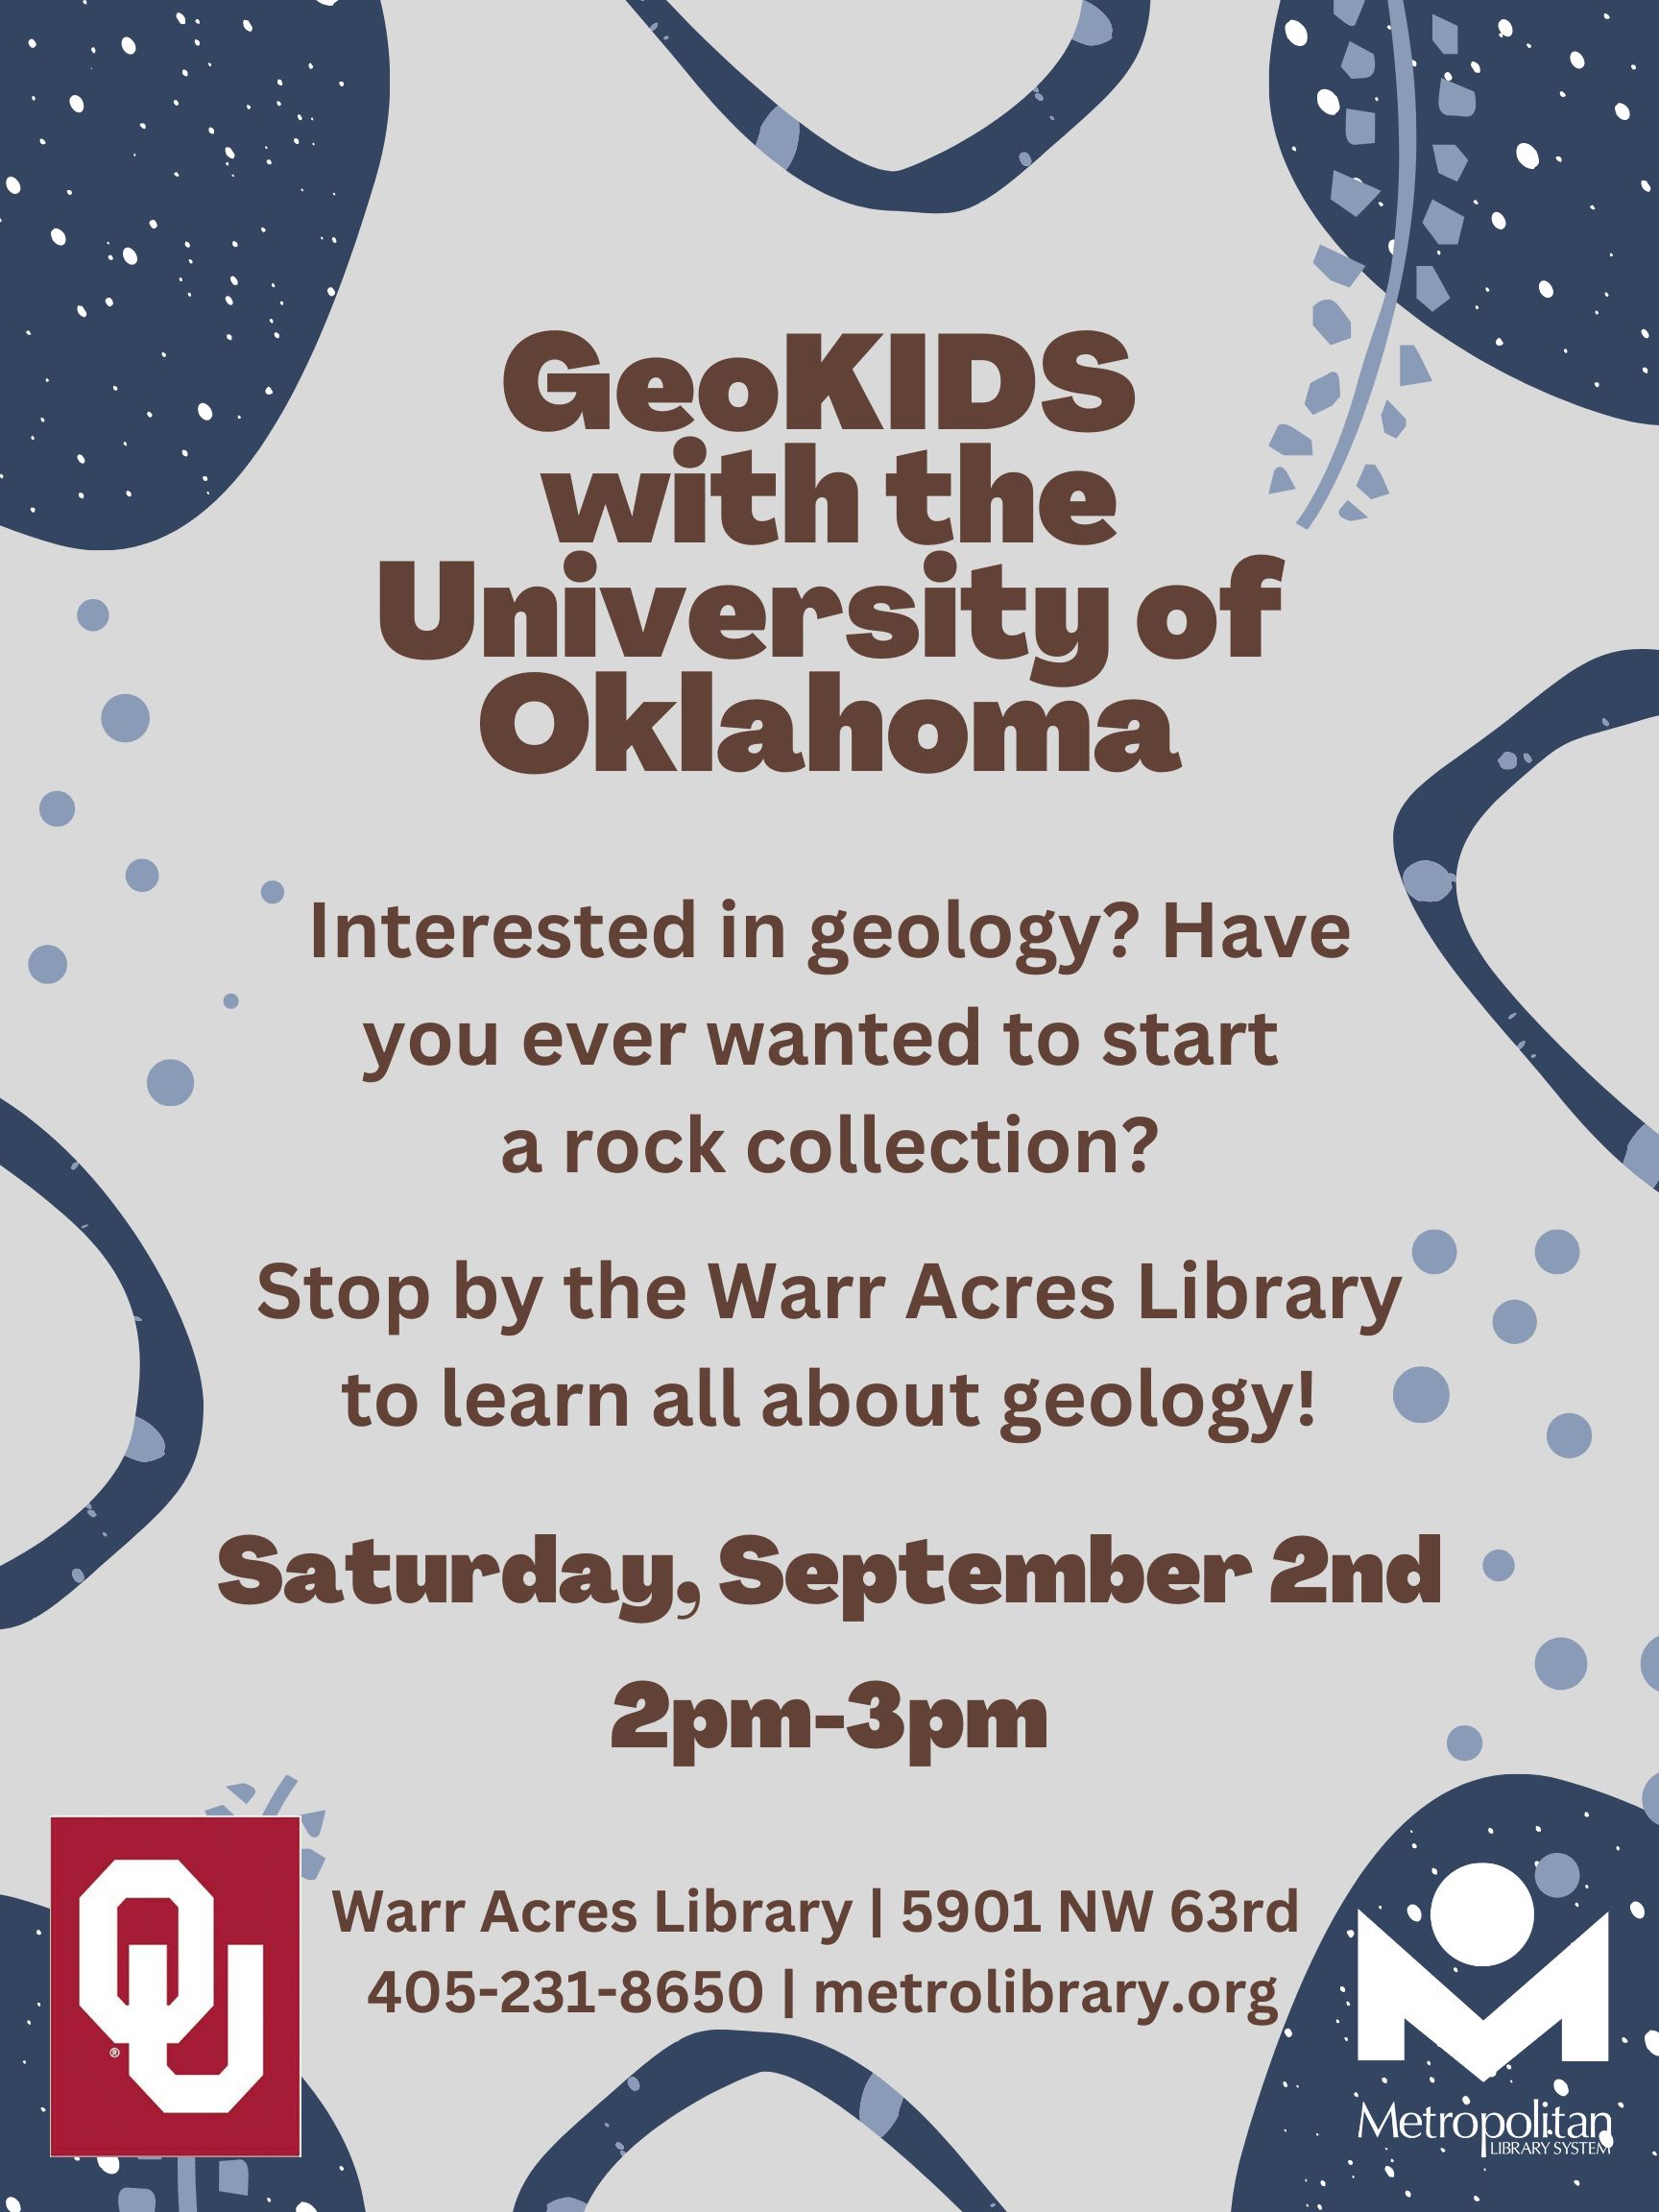 GeoKIDS with the University of Oklahoma